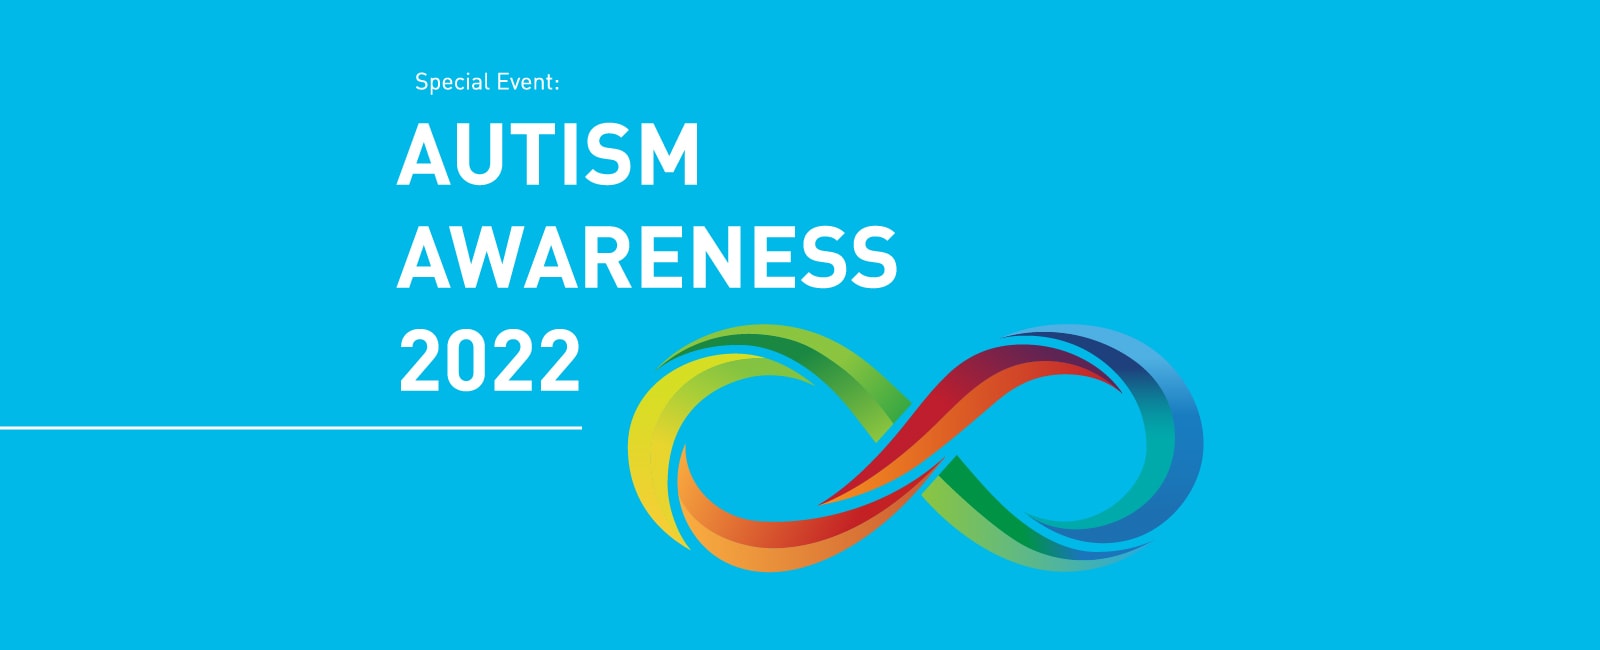 Special Event: Autism Awareness 2022